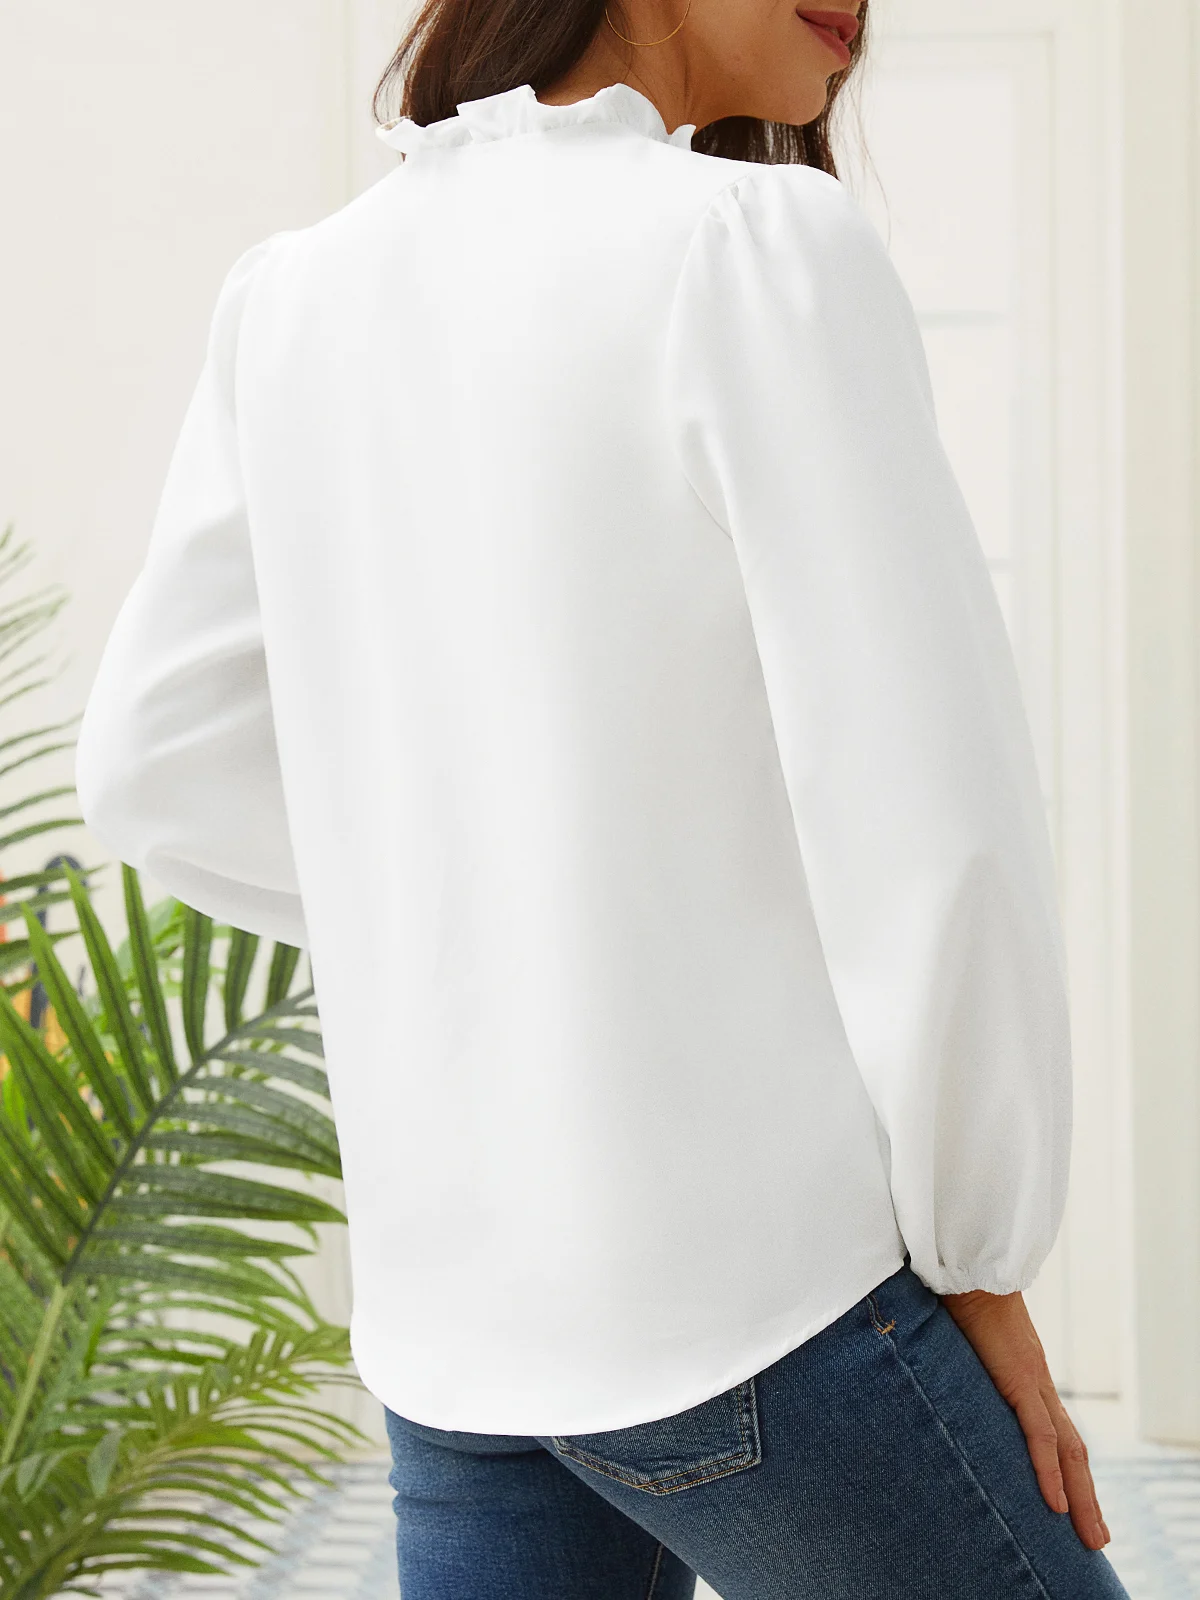 Lässig Rüschen V-Ausschnitt Langarm Blusen & Shirts